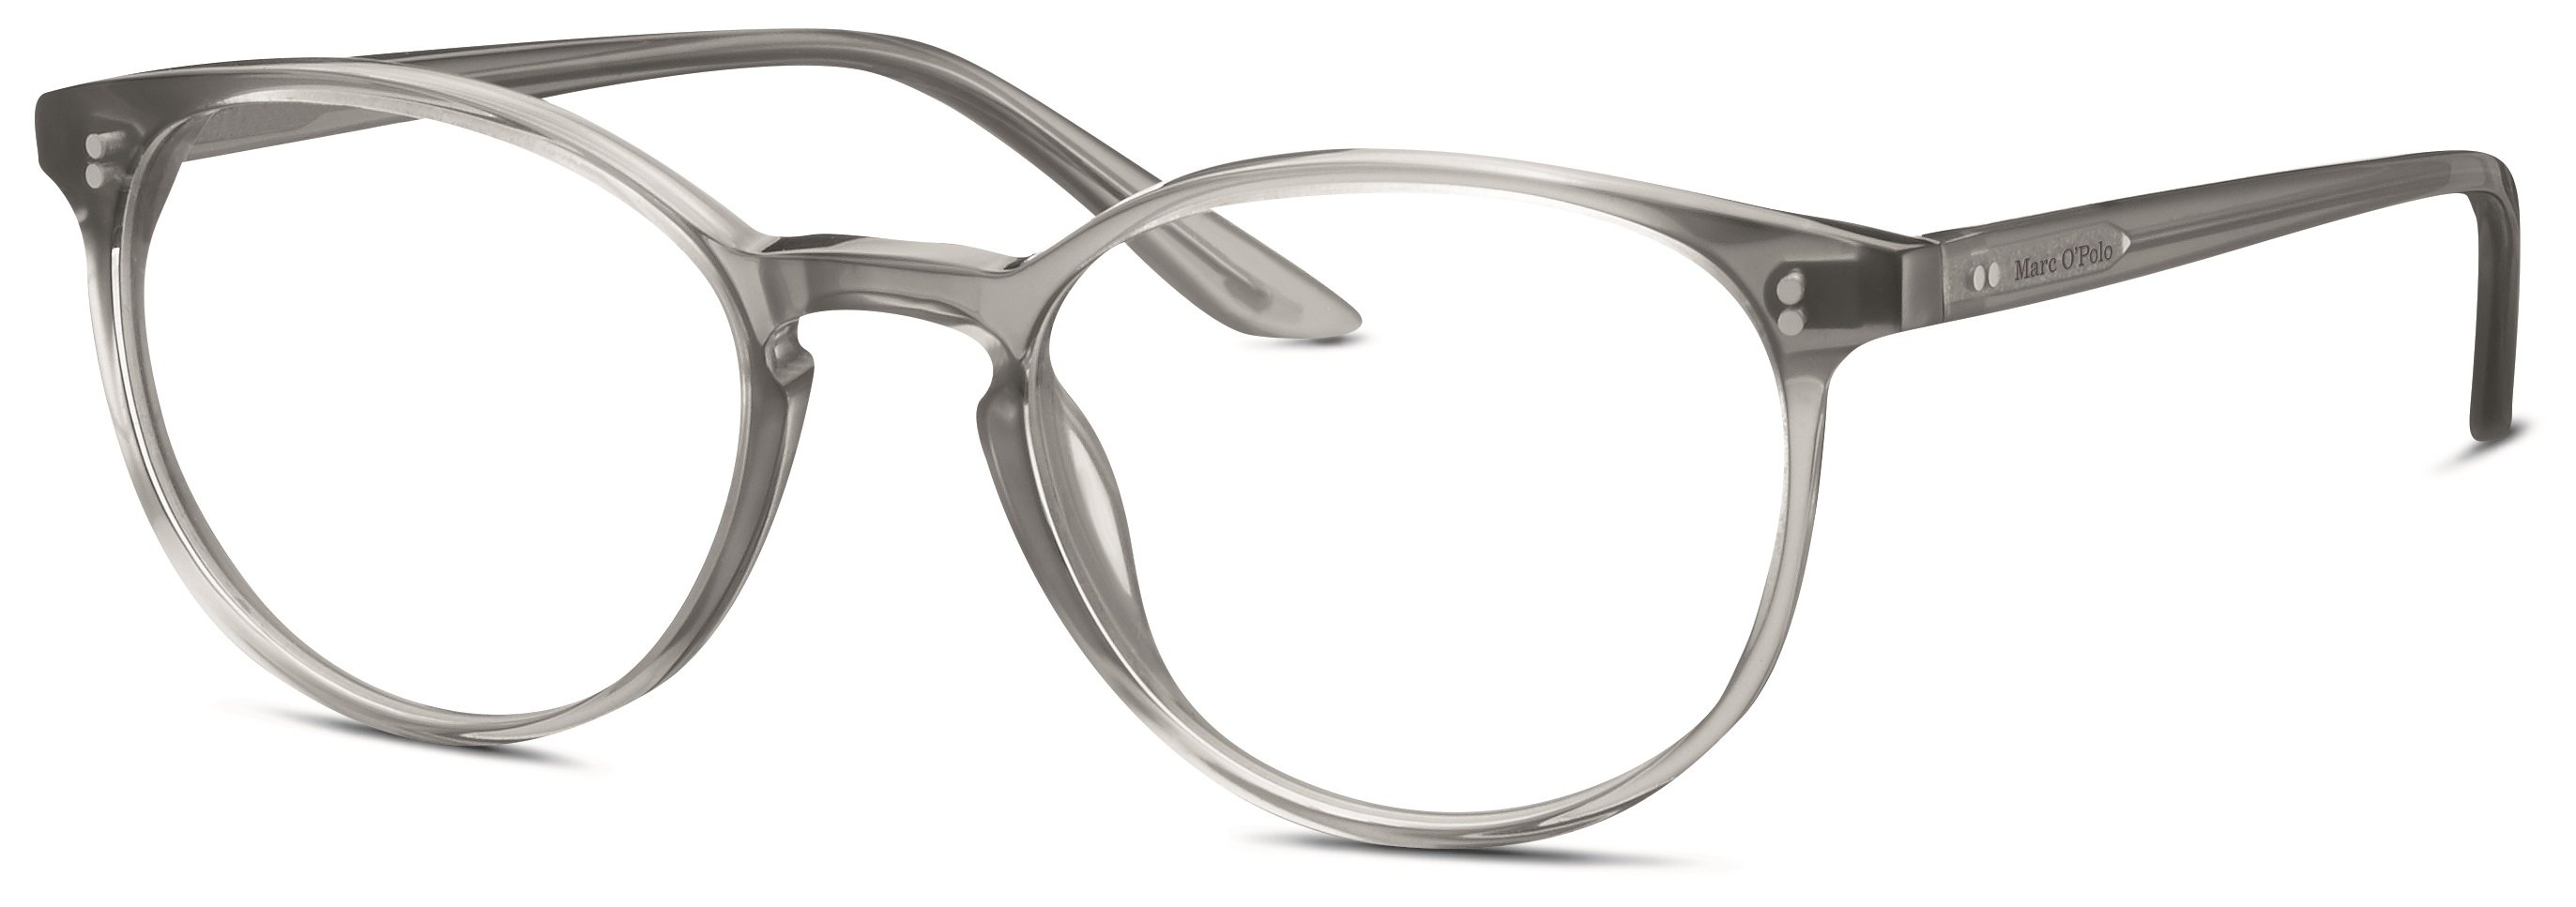 Das Bild zeigt die Korrektionsbrille 503090 30 von der Marke Marc o Polo in grau.